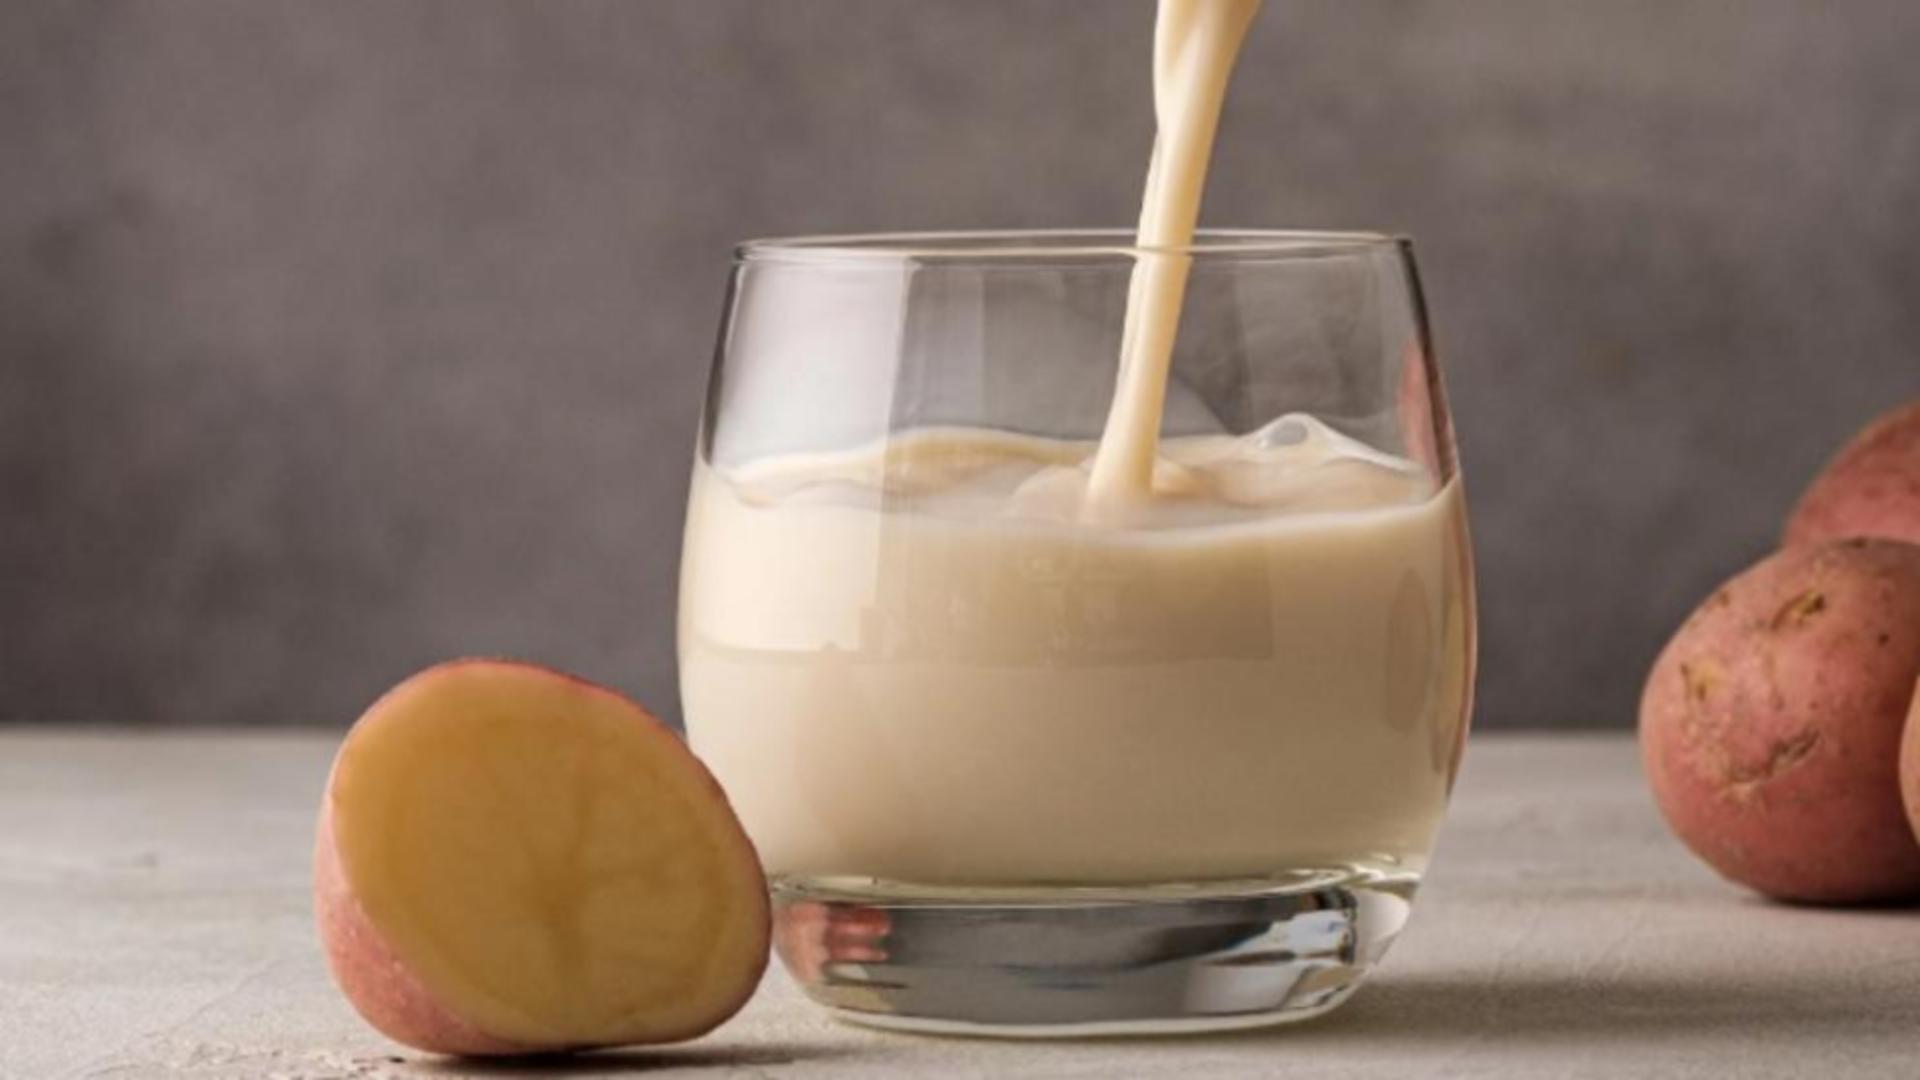 Laptele de cartof, salvare pentru diabetici. Beneficii nebănuite pentru sănătate